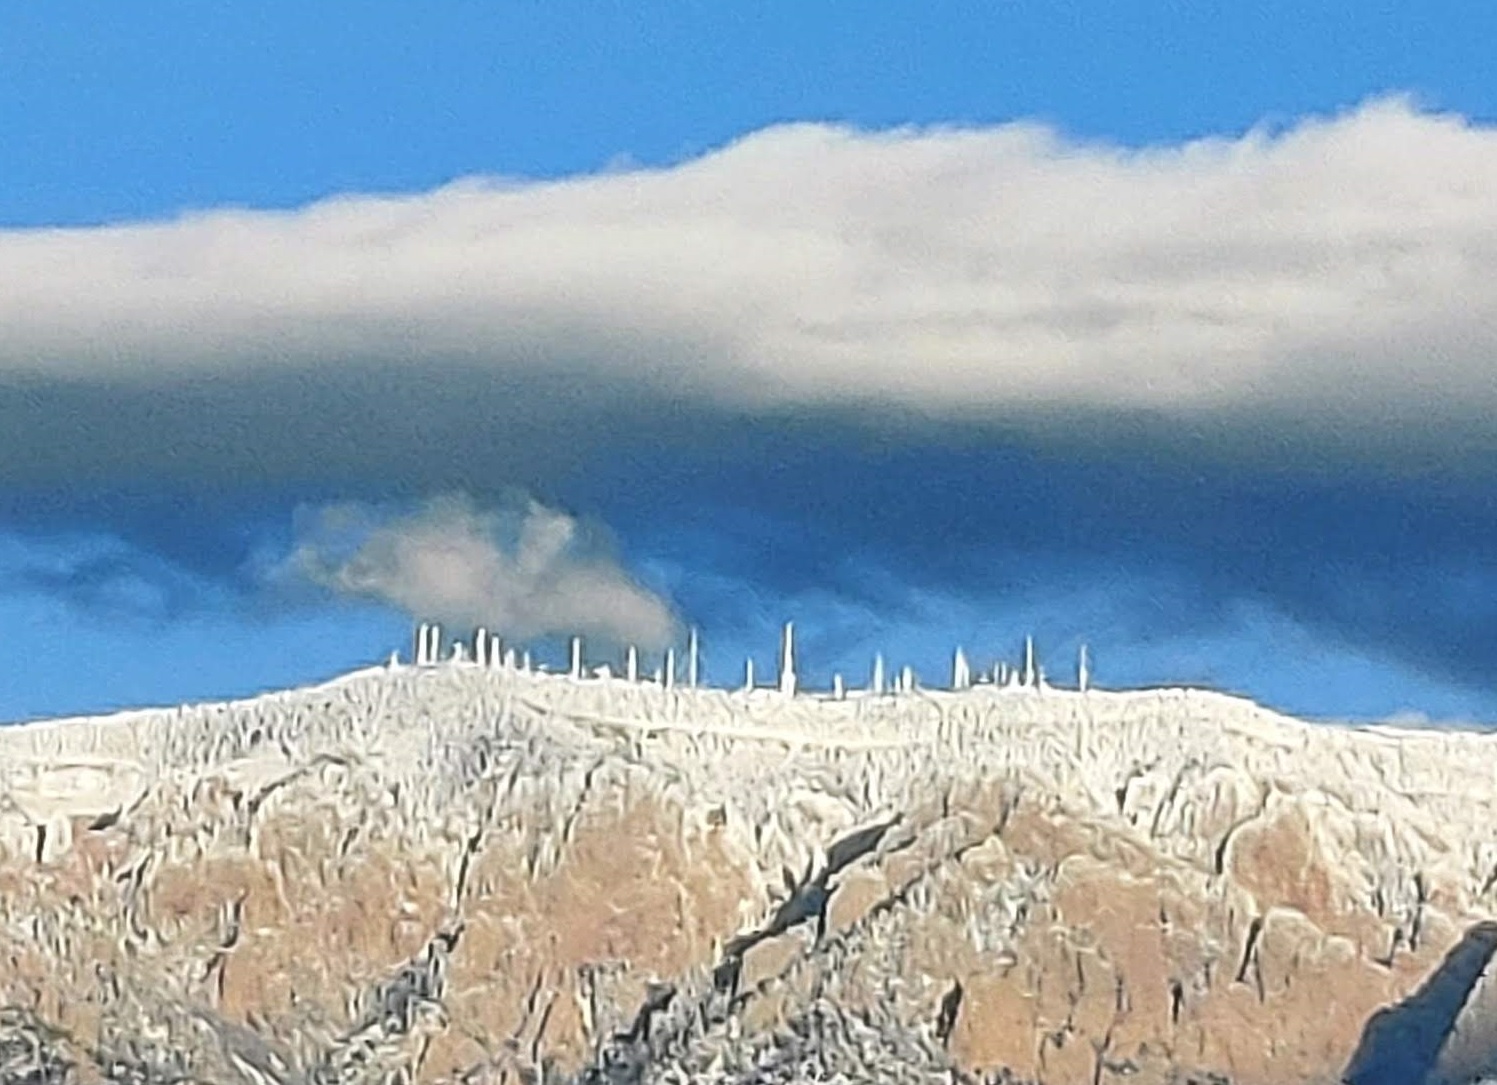 Sandia Peak